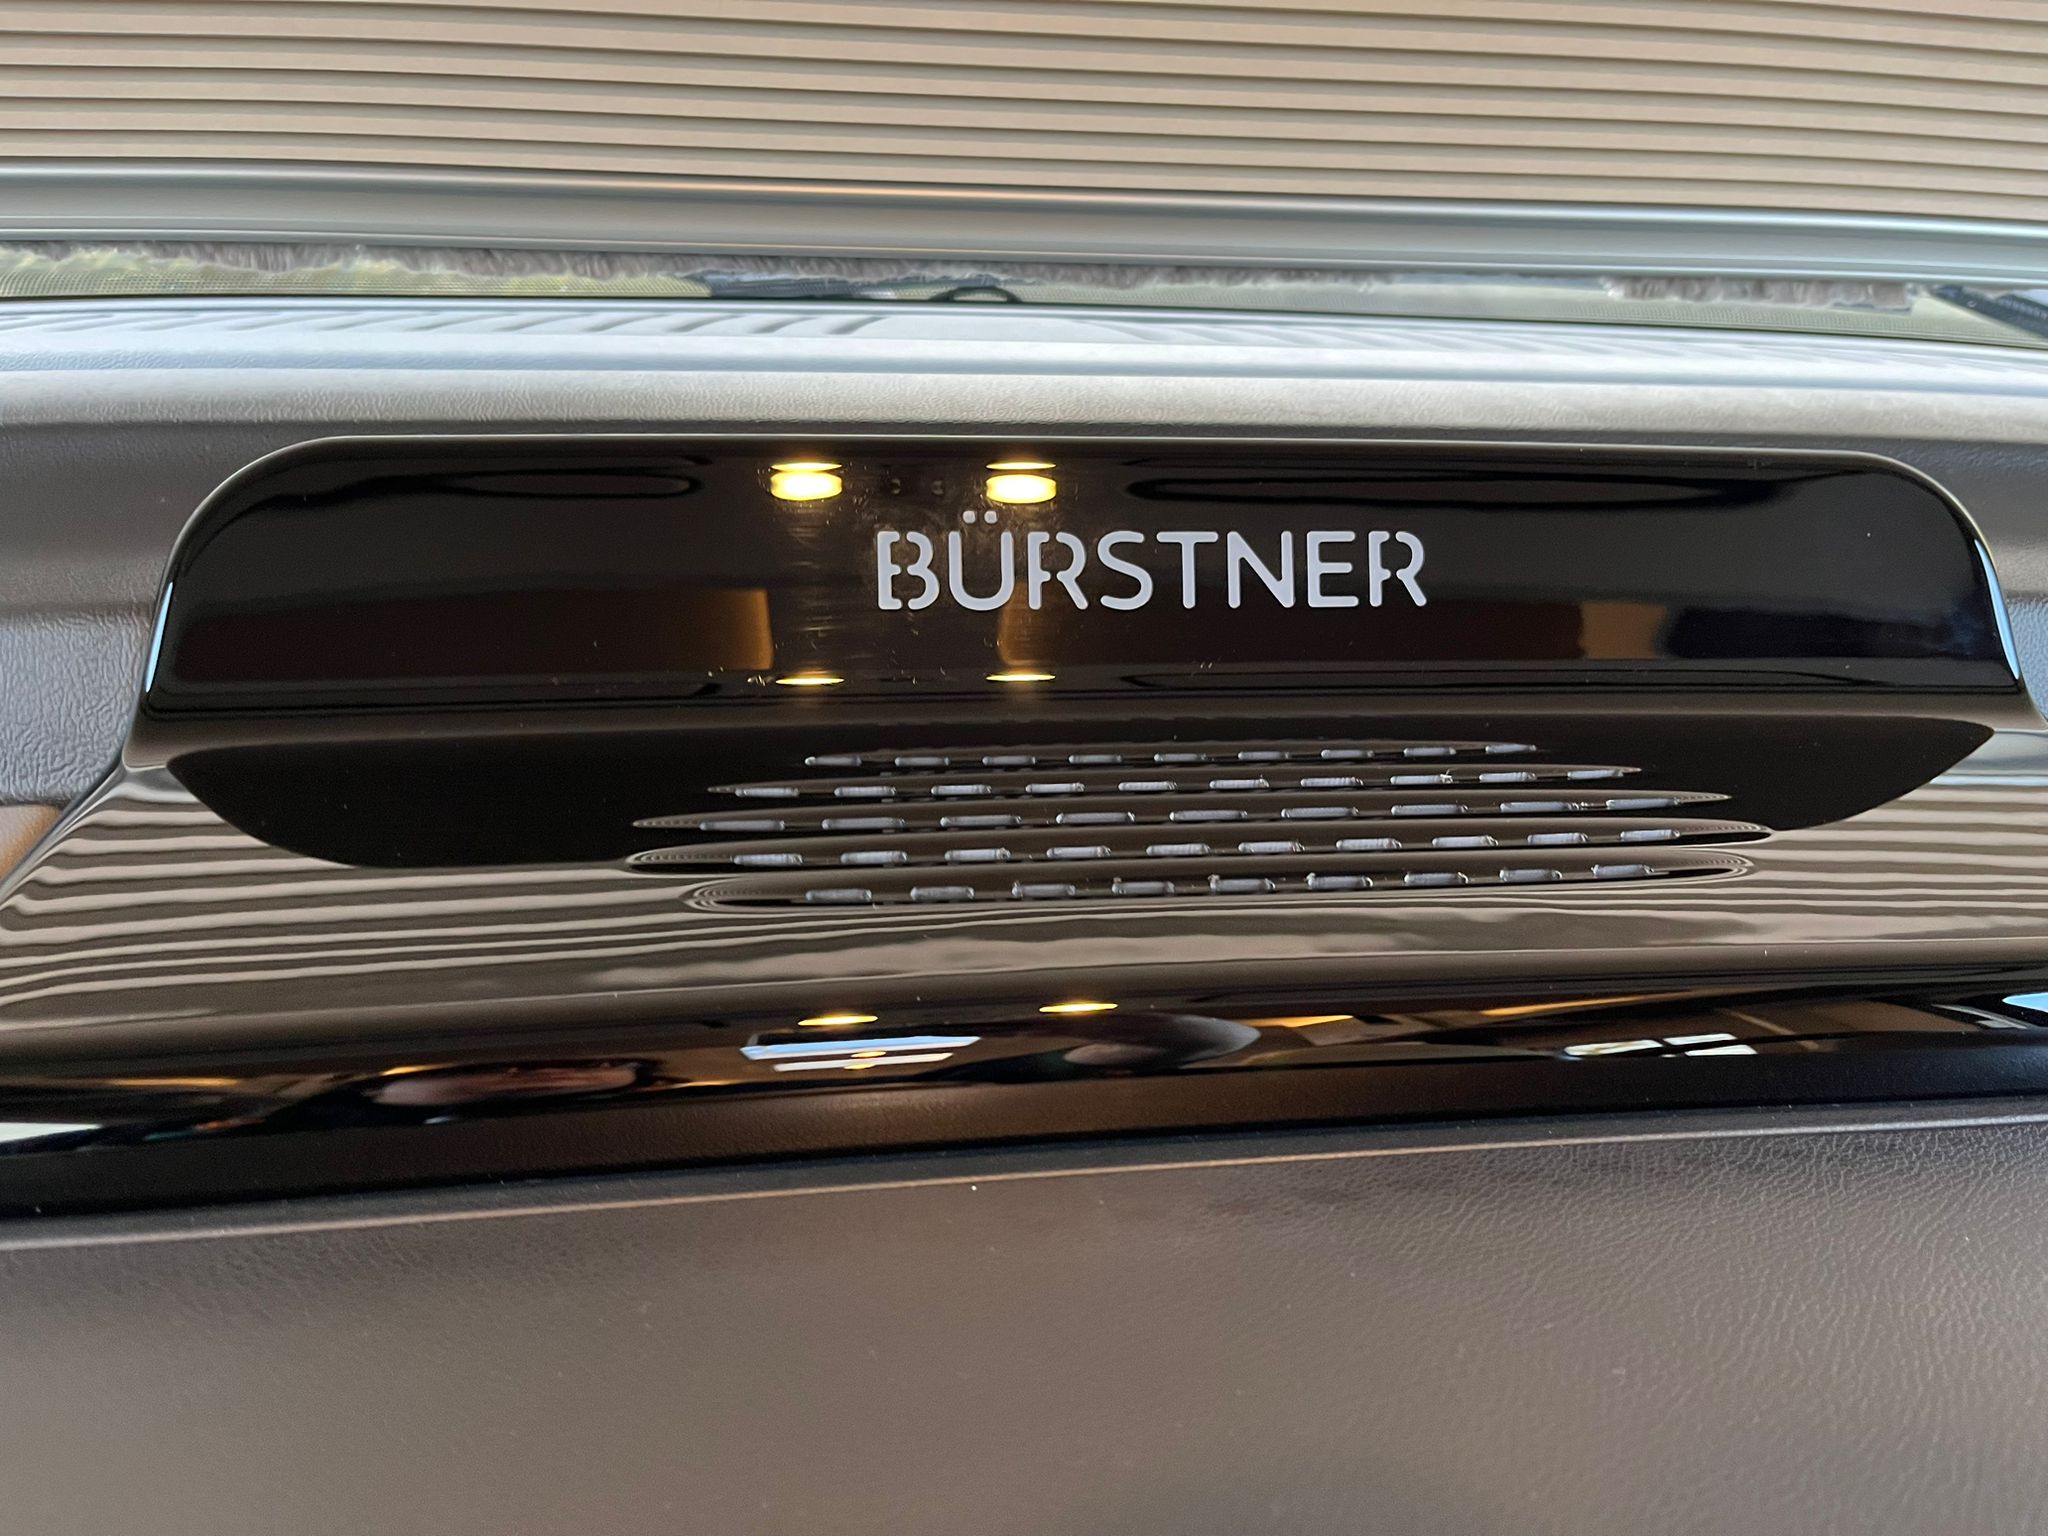 NEW BURSTNER ELEGANCE i910 - AUTOMATIC